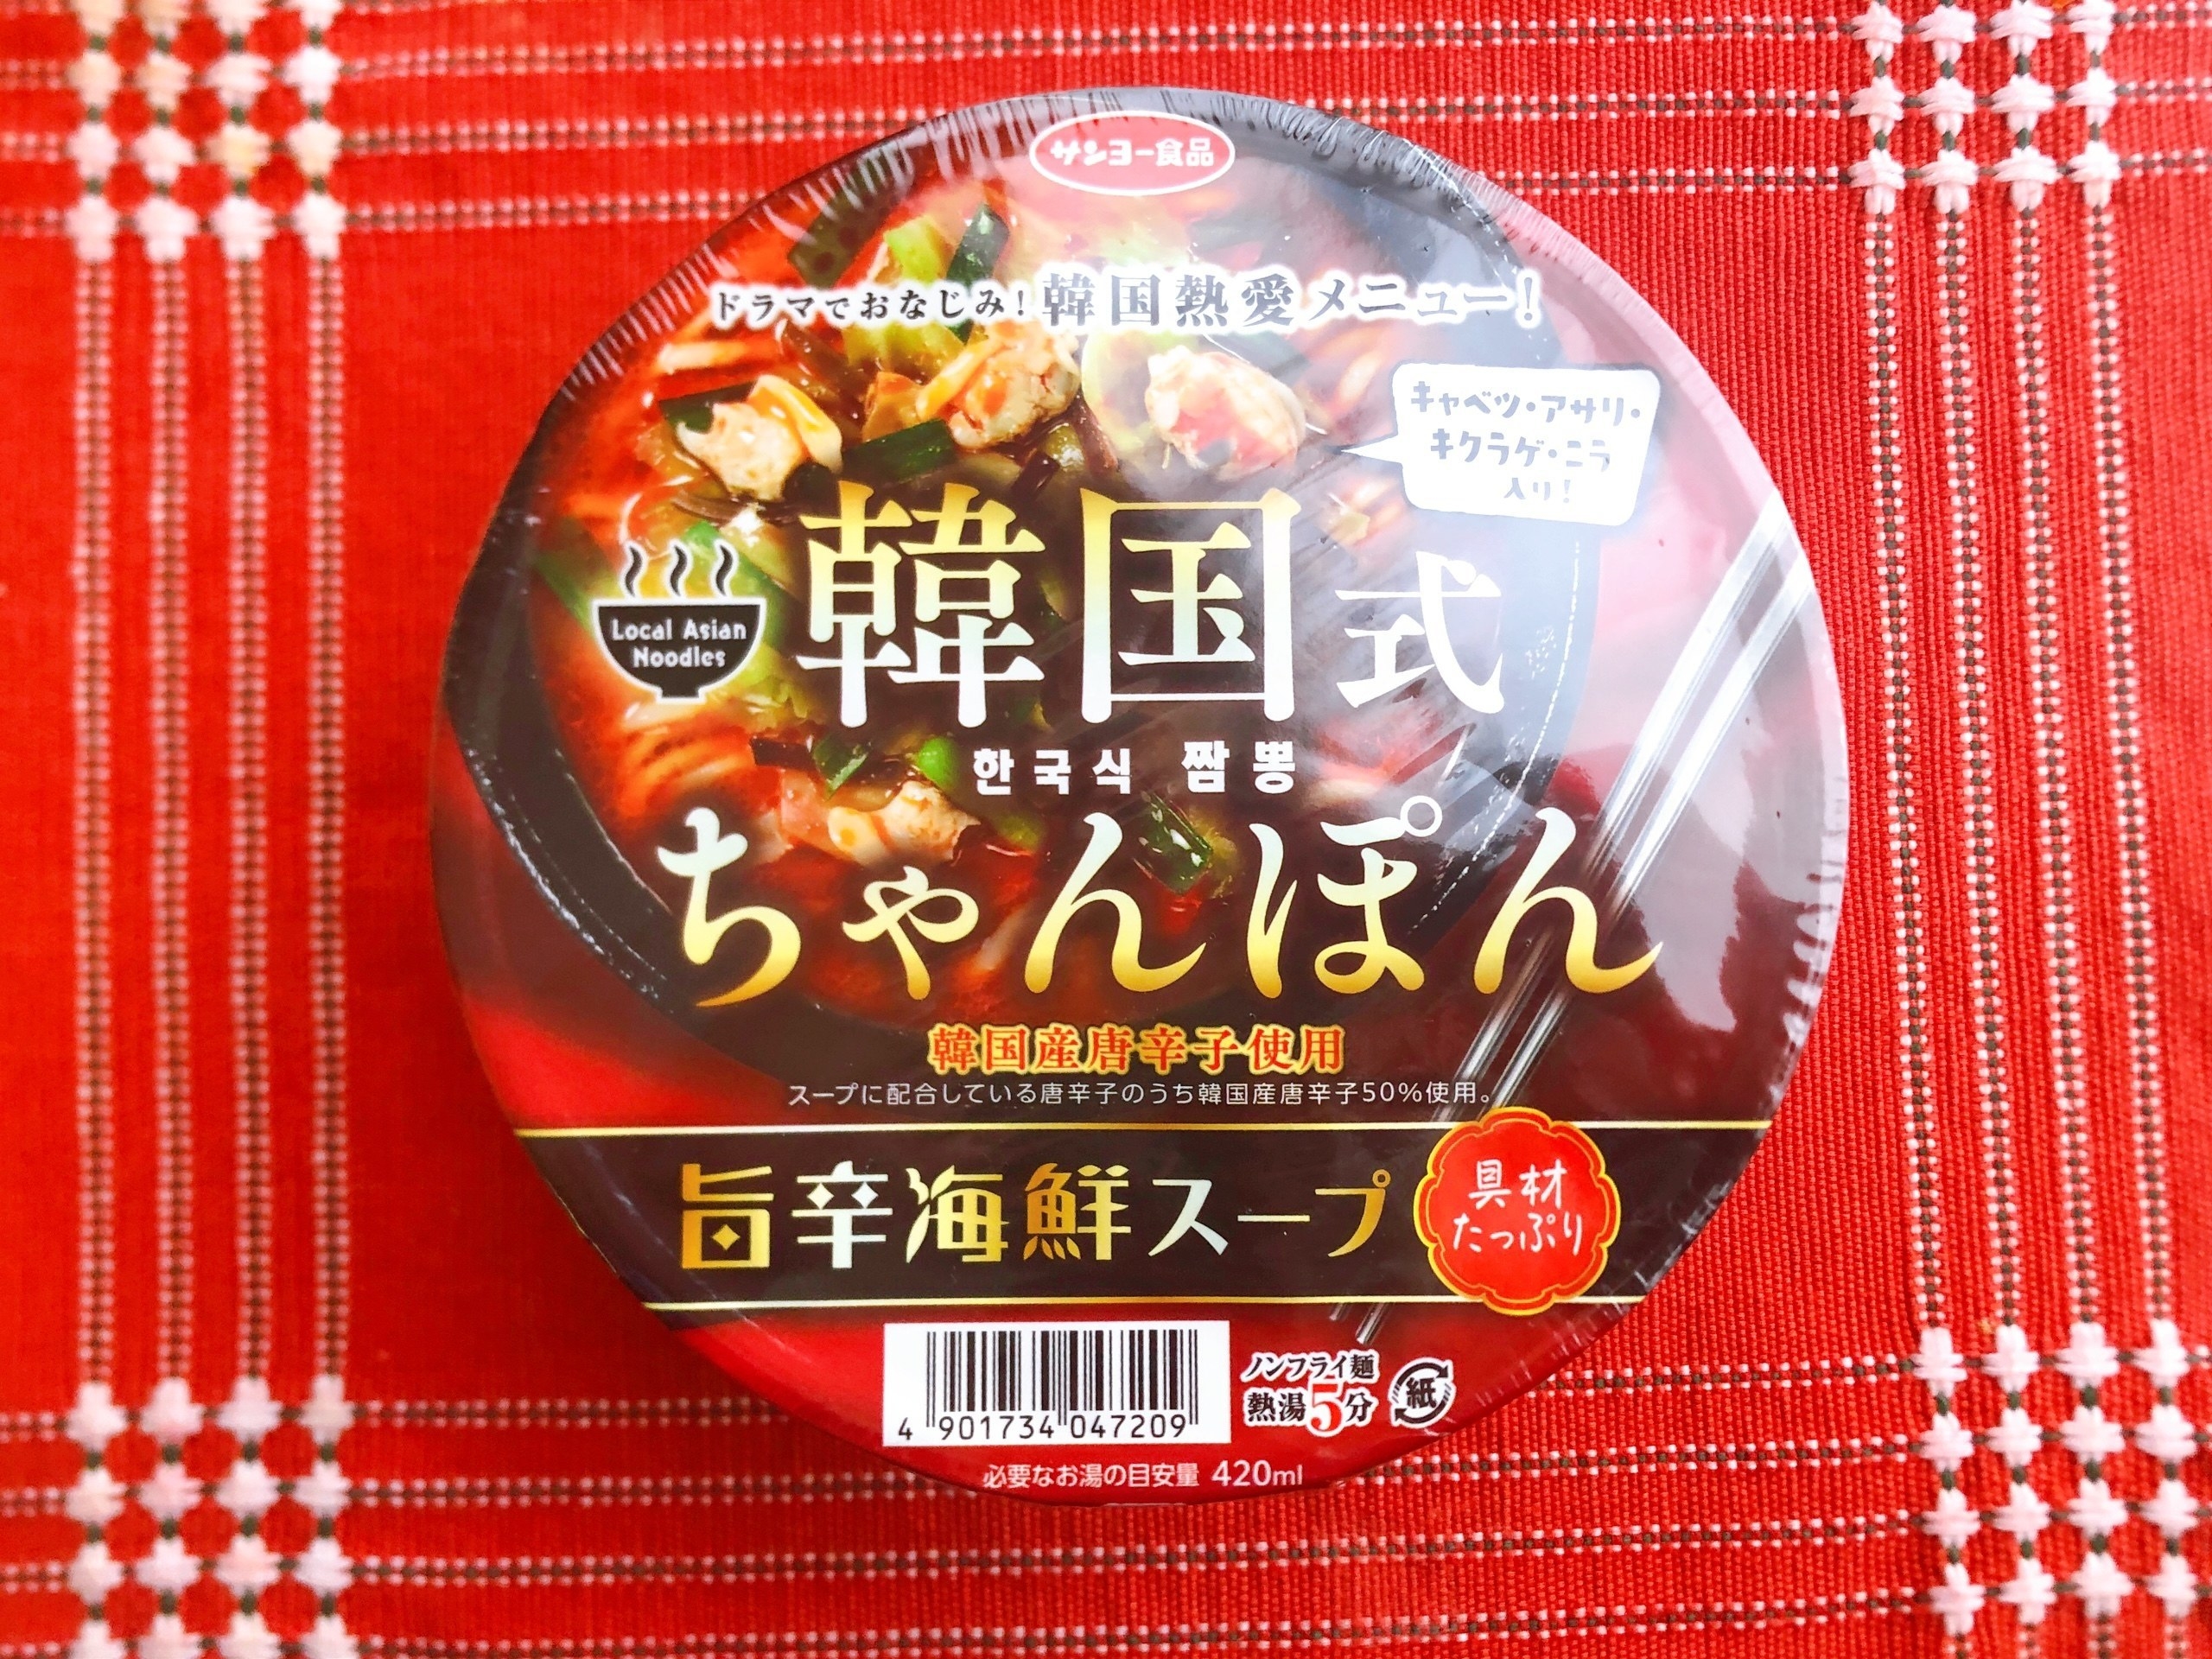 セブン-イレブンで見つけたおすすめカップ麺「韓国式ちゃんぽん」